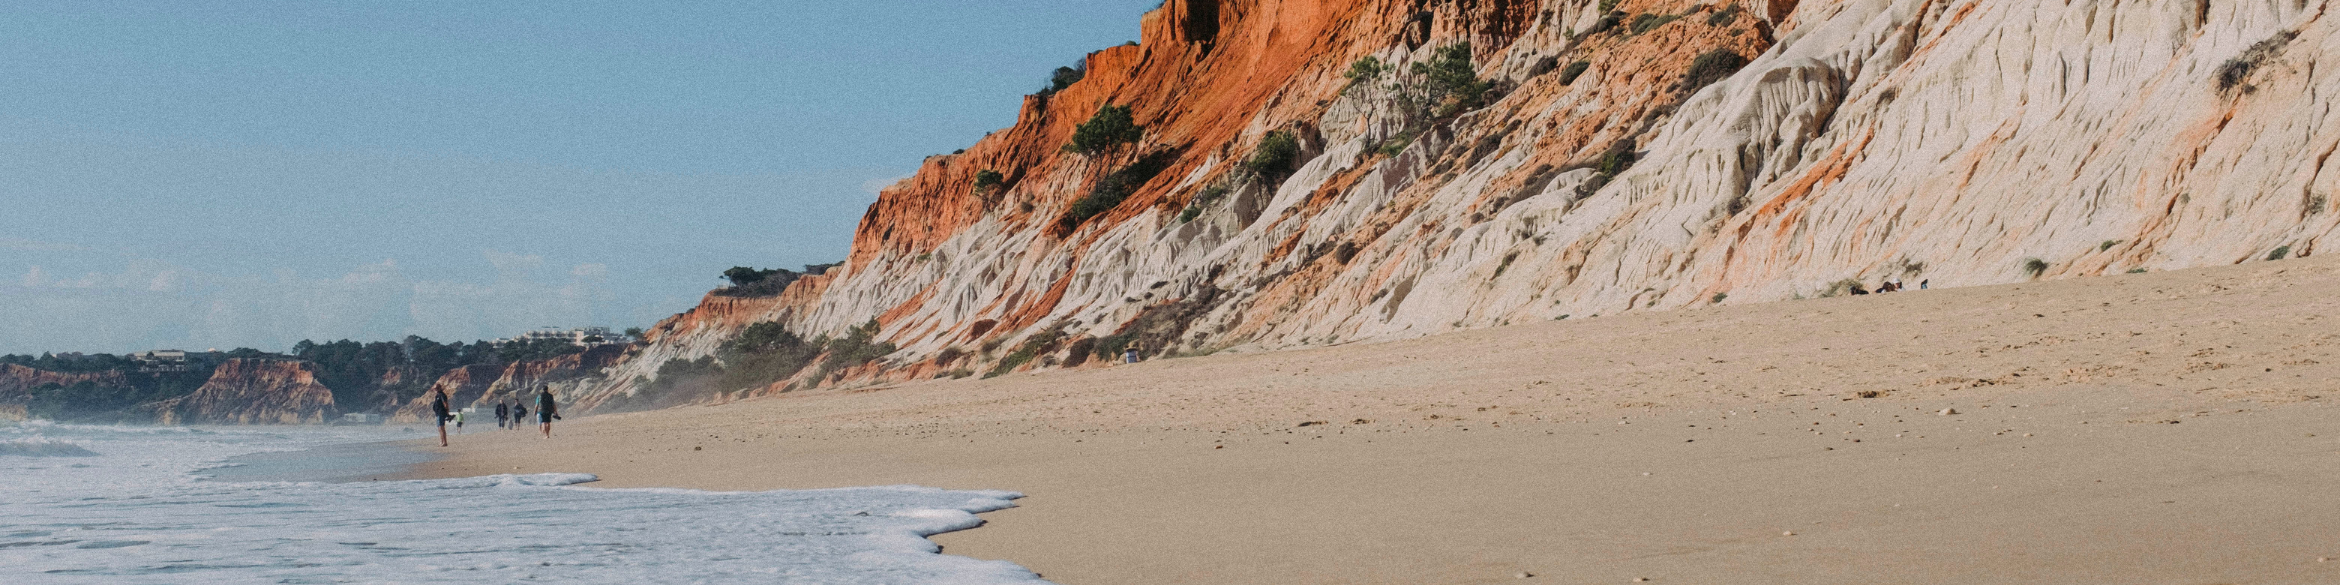 La Praia da Falésia, à Albufeira, en Algarve, a été classée sixième meilleure plage du monde par les Travellers Choice Awards